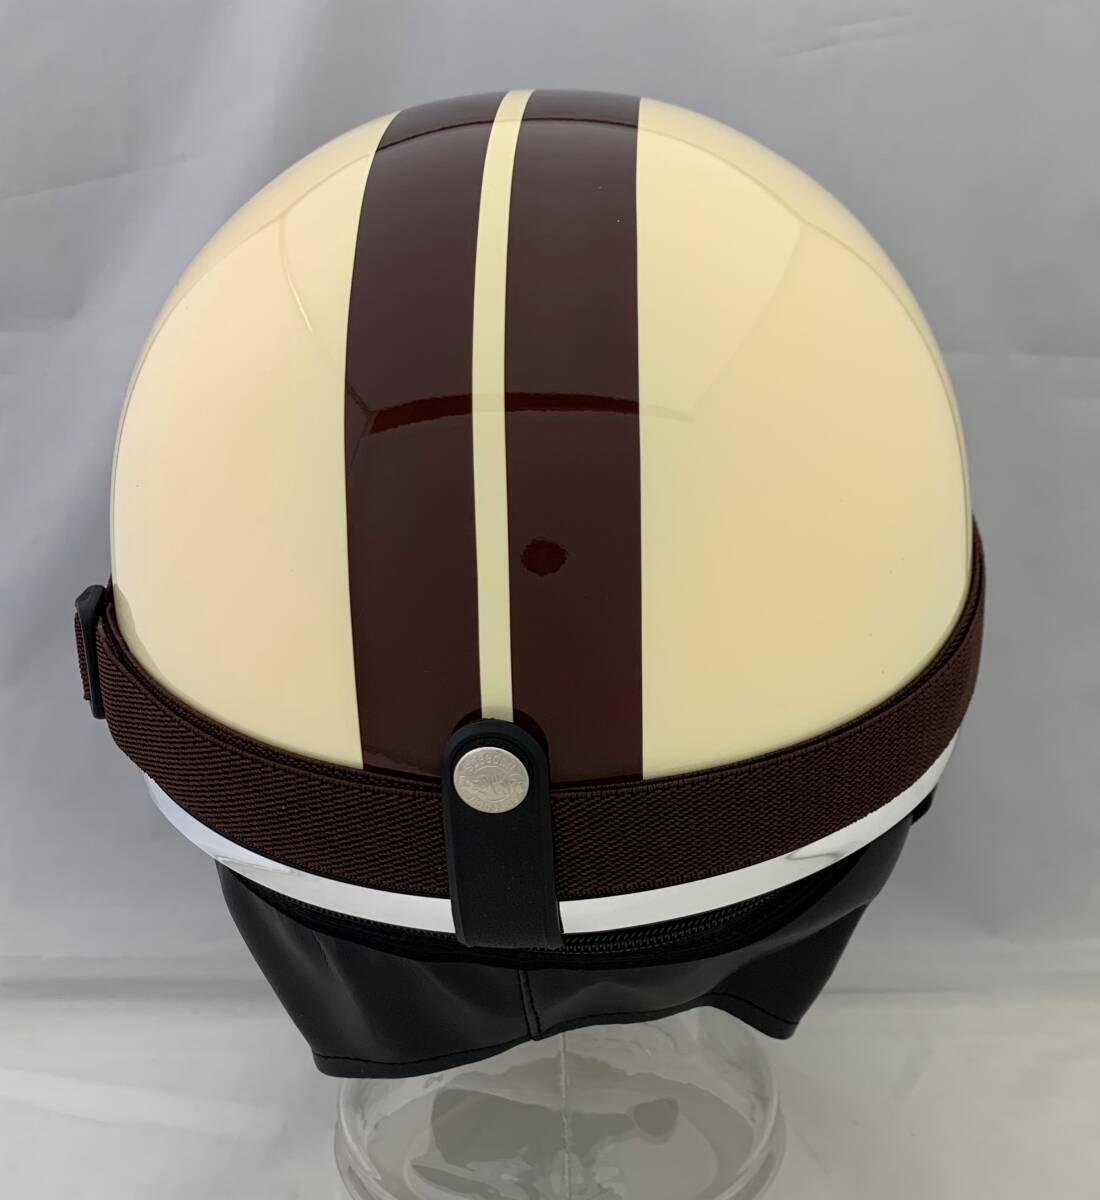 ゴーグル付き半キャップヘルメット ビンテージヘルメット ハーフキャップヘルメット アイボリーの画像3